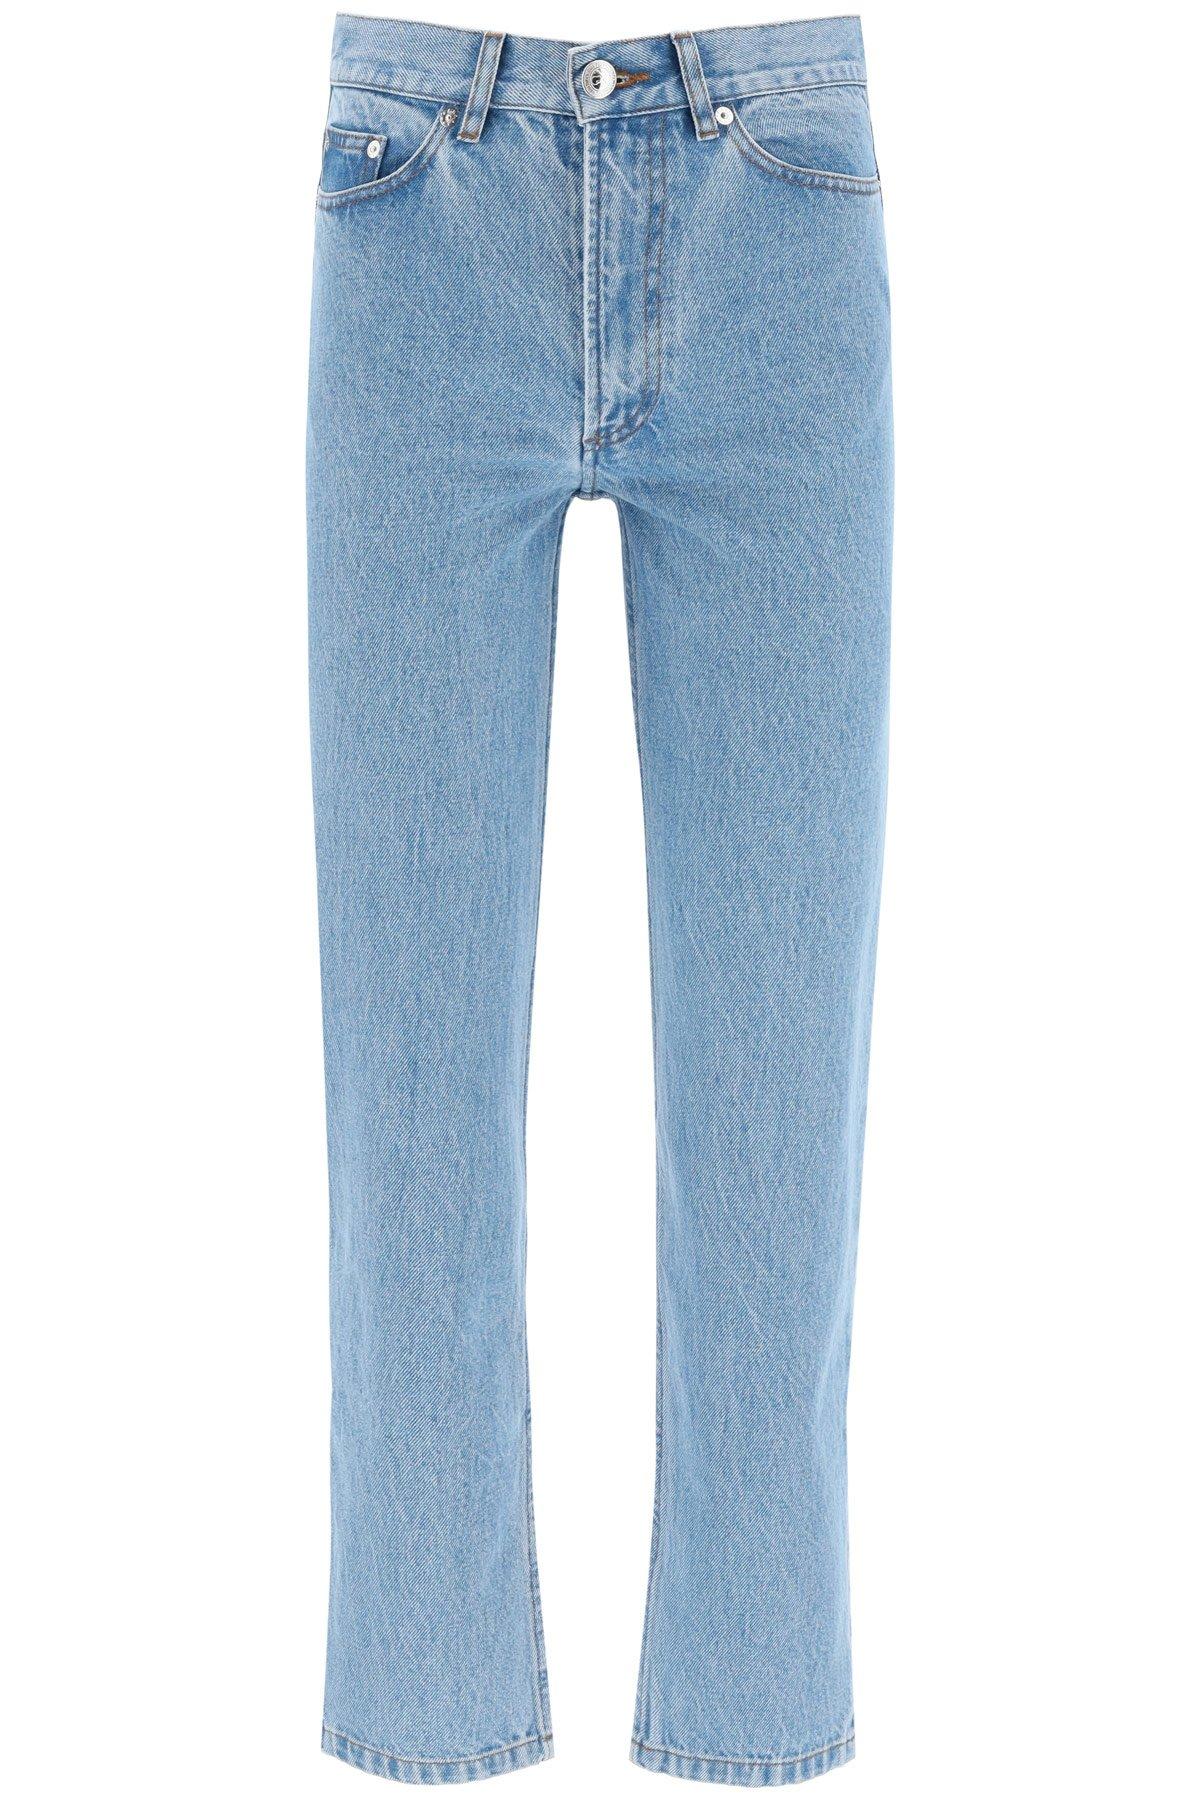 A.P.C. Martin Denim Jeans in Blue - Save 2% - Lyst